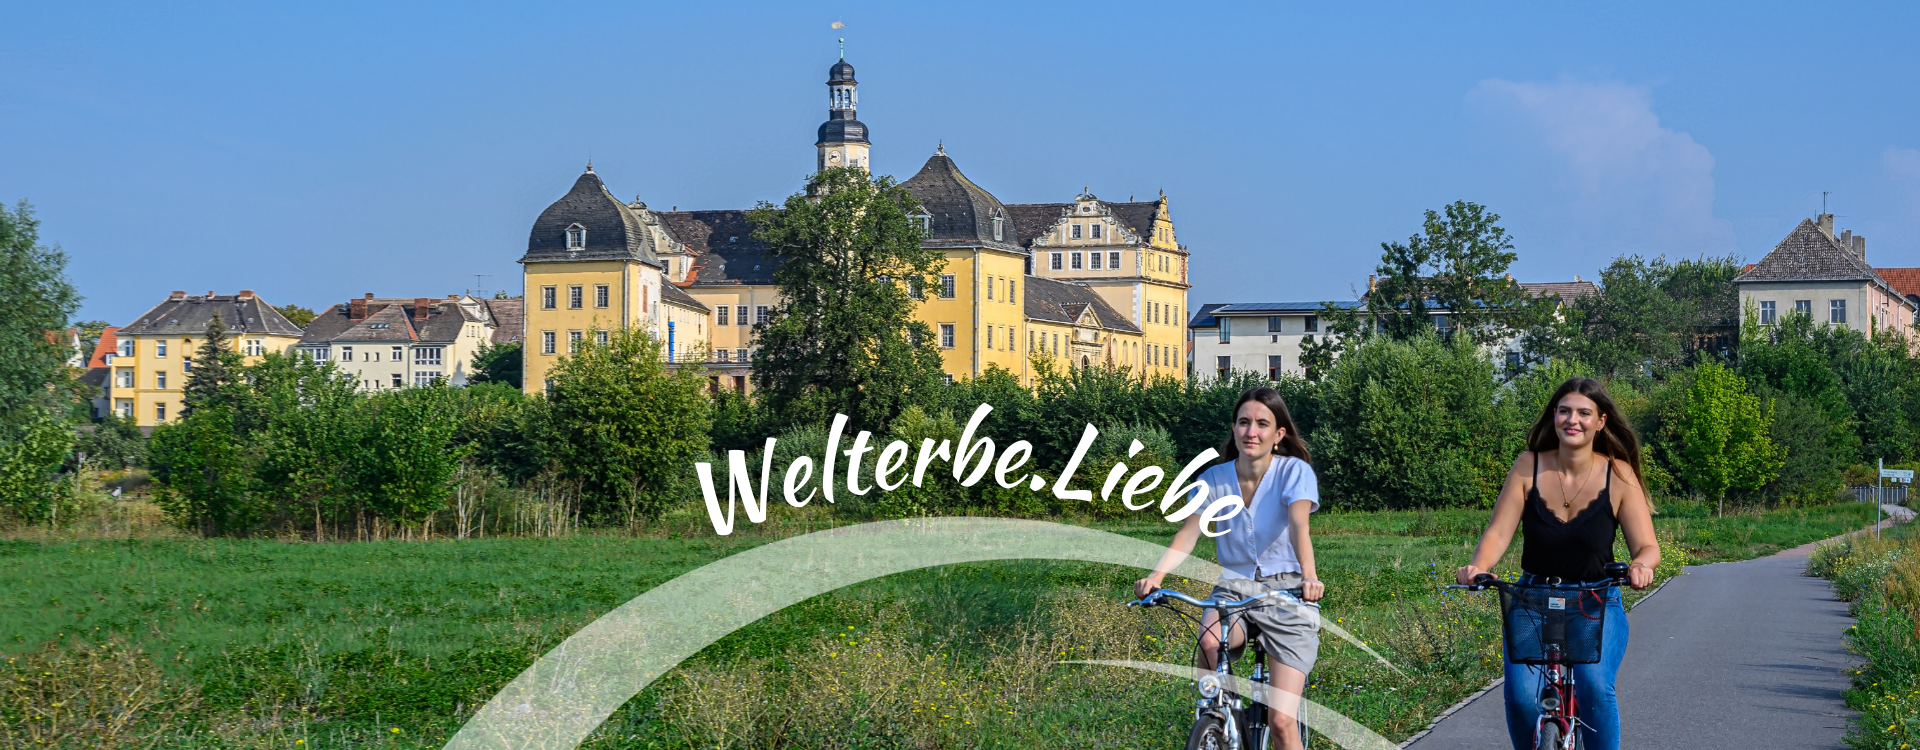 Welterbe.Liebe - Radfahrer in Coswig (Anhalt)